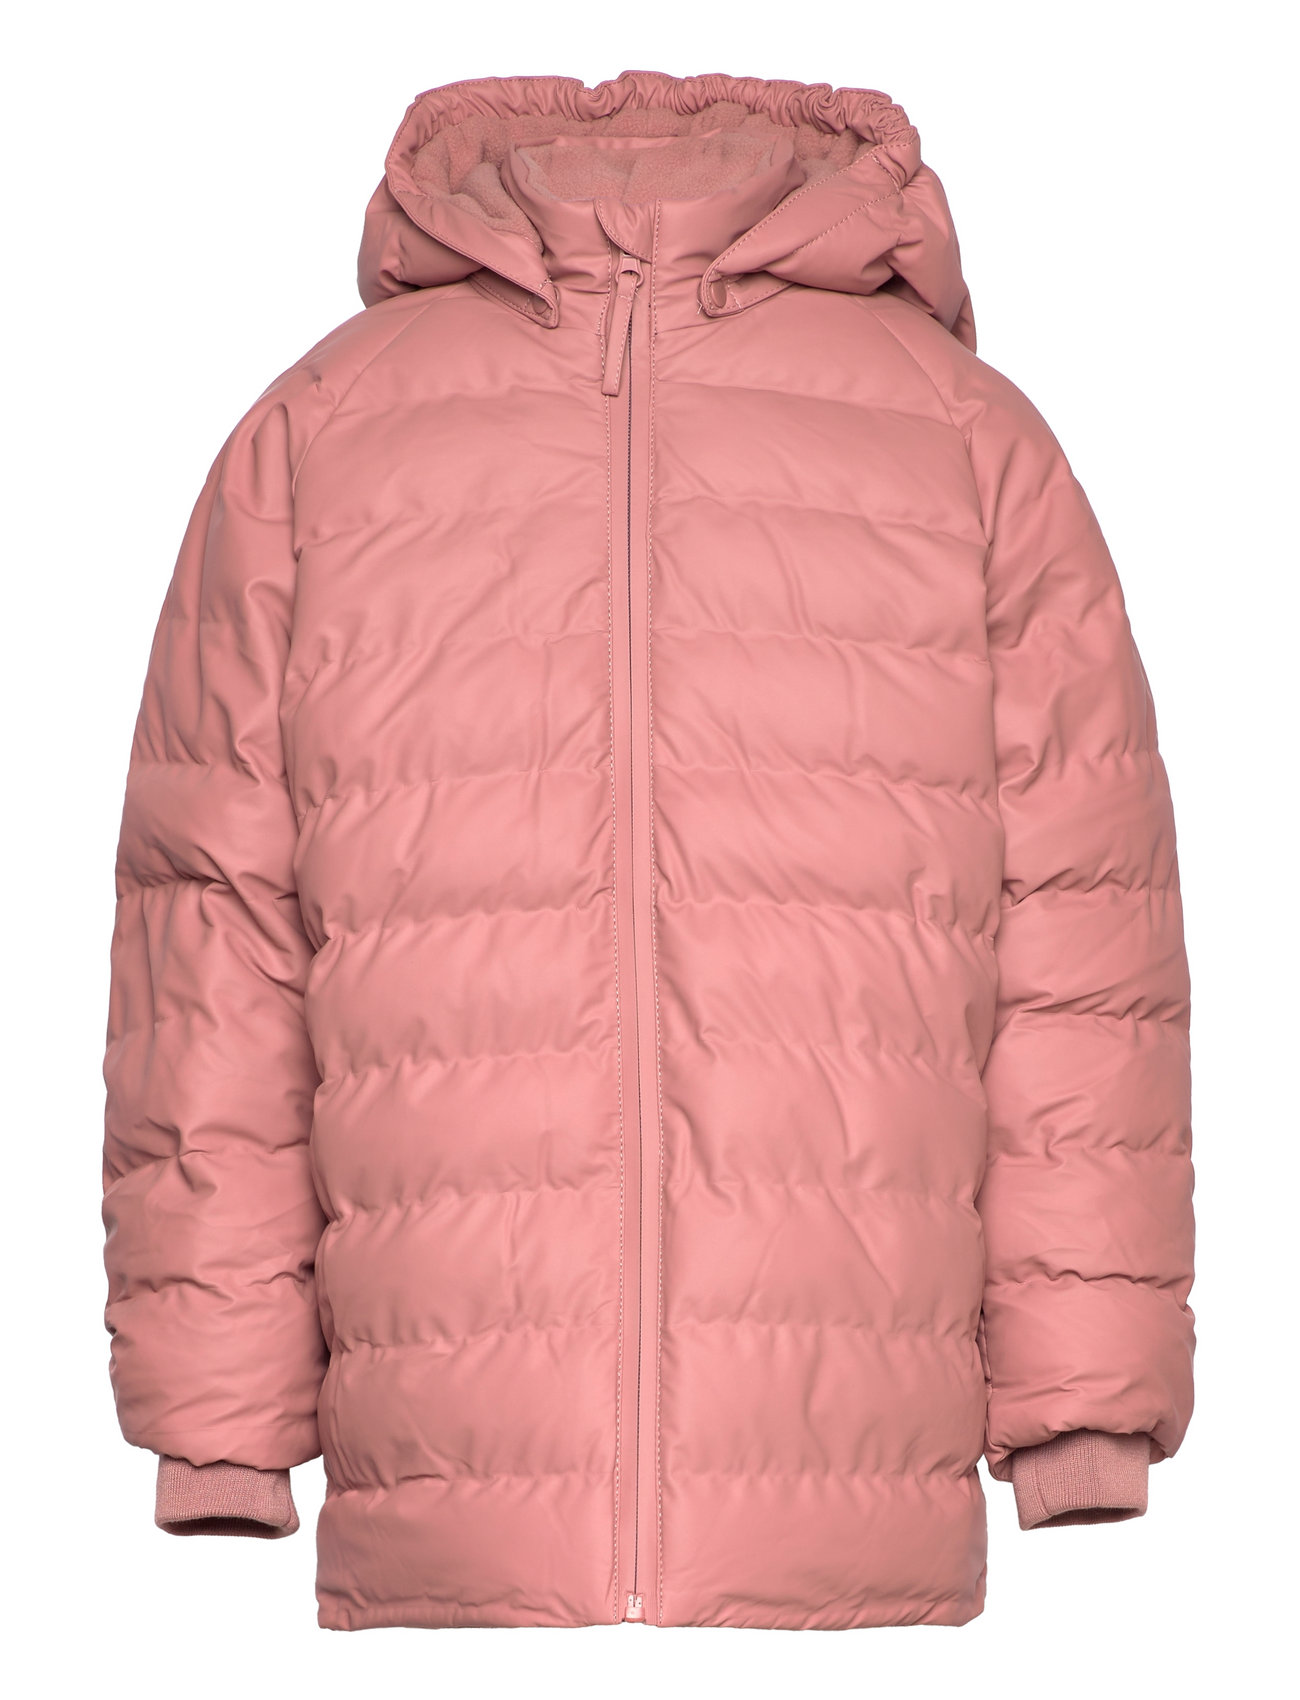 Pu Winter Jacket - 272 kr. Køb & forede jakker fra CeLaVi online Boozt.com. Hurtig levering & nem retur